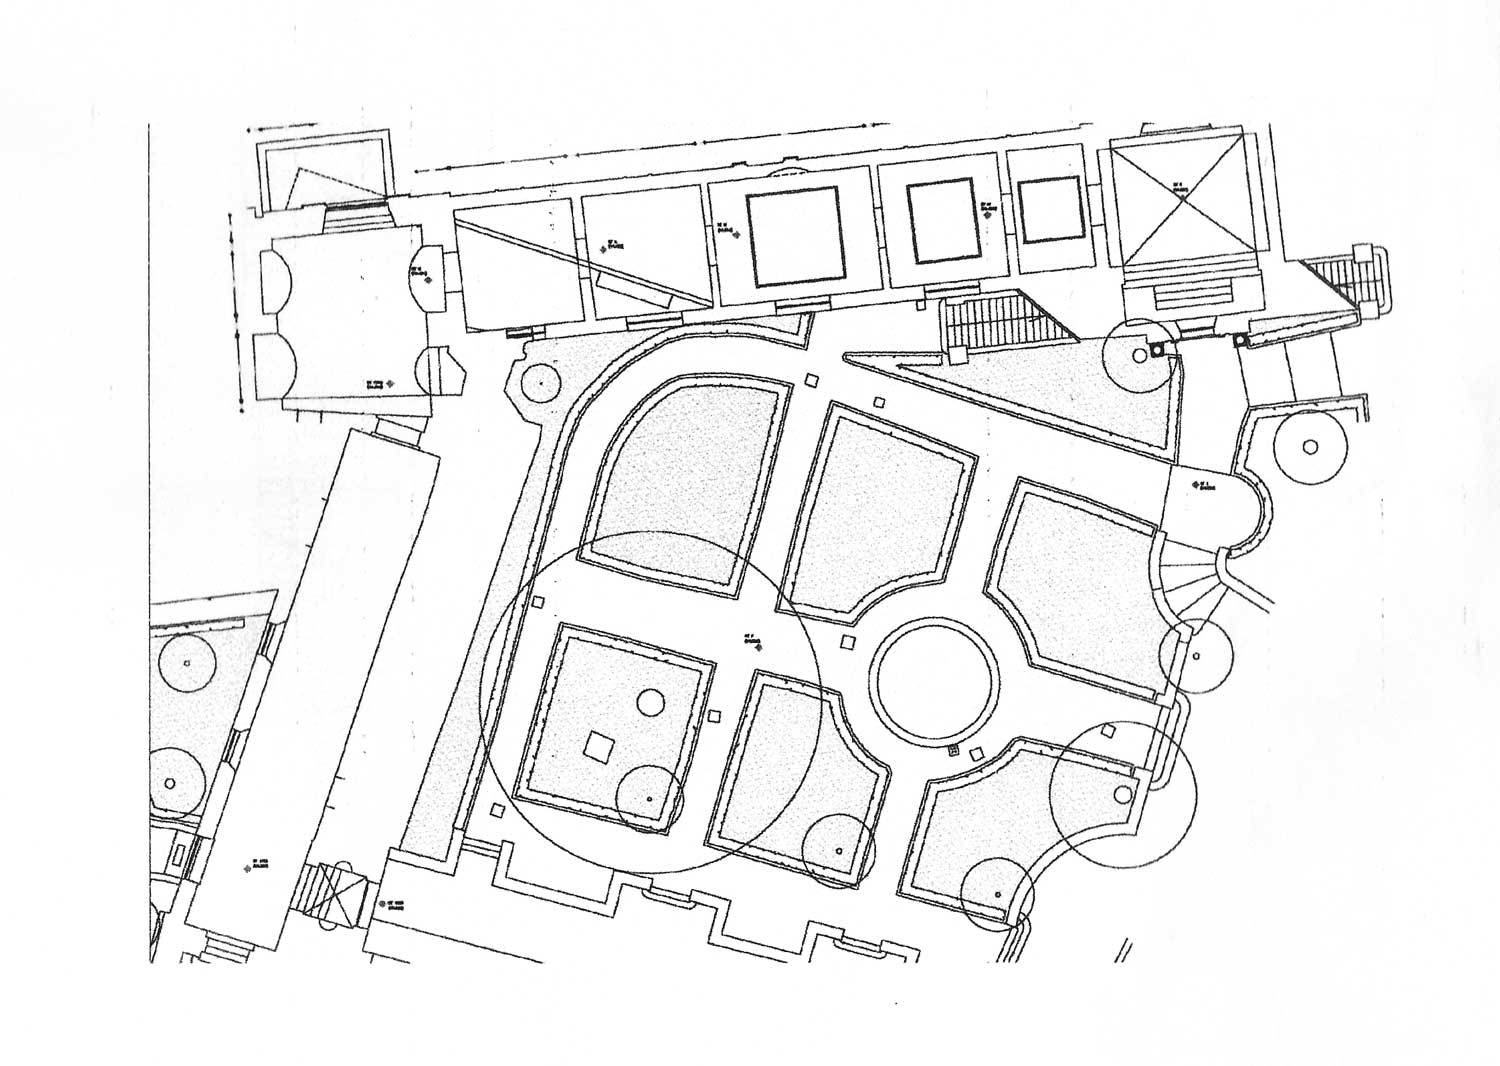 15 - Rilievi diretti e strumentali del Giardino Romano al Campidoglio, Roma - Stralcio planimetrico